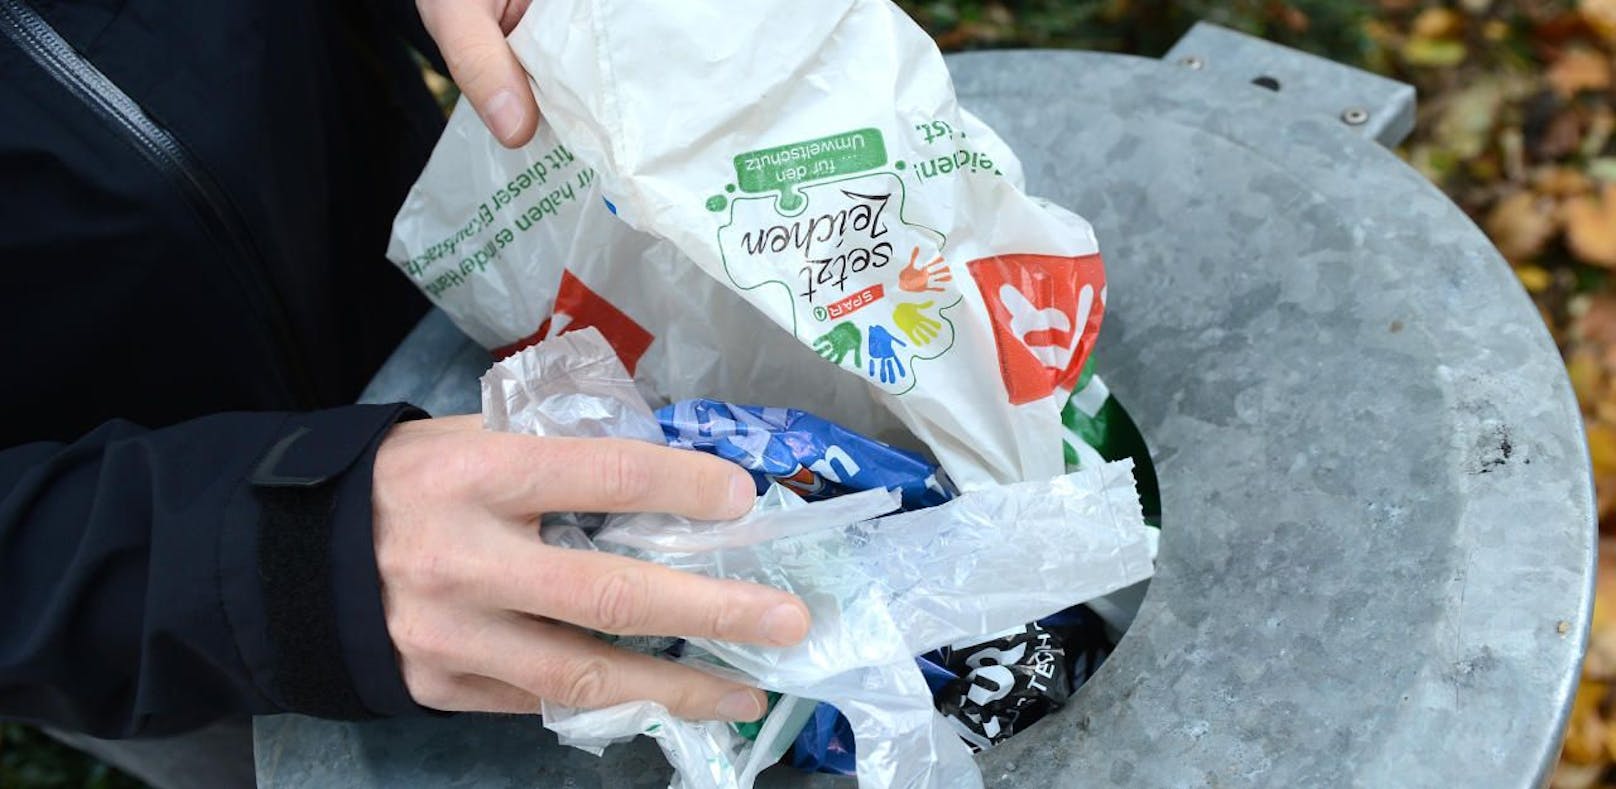 Plastiksackerlverbot im Lebensmittelhandel kommt ab 2020.